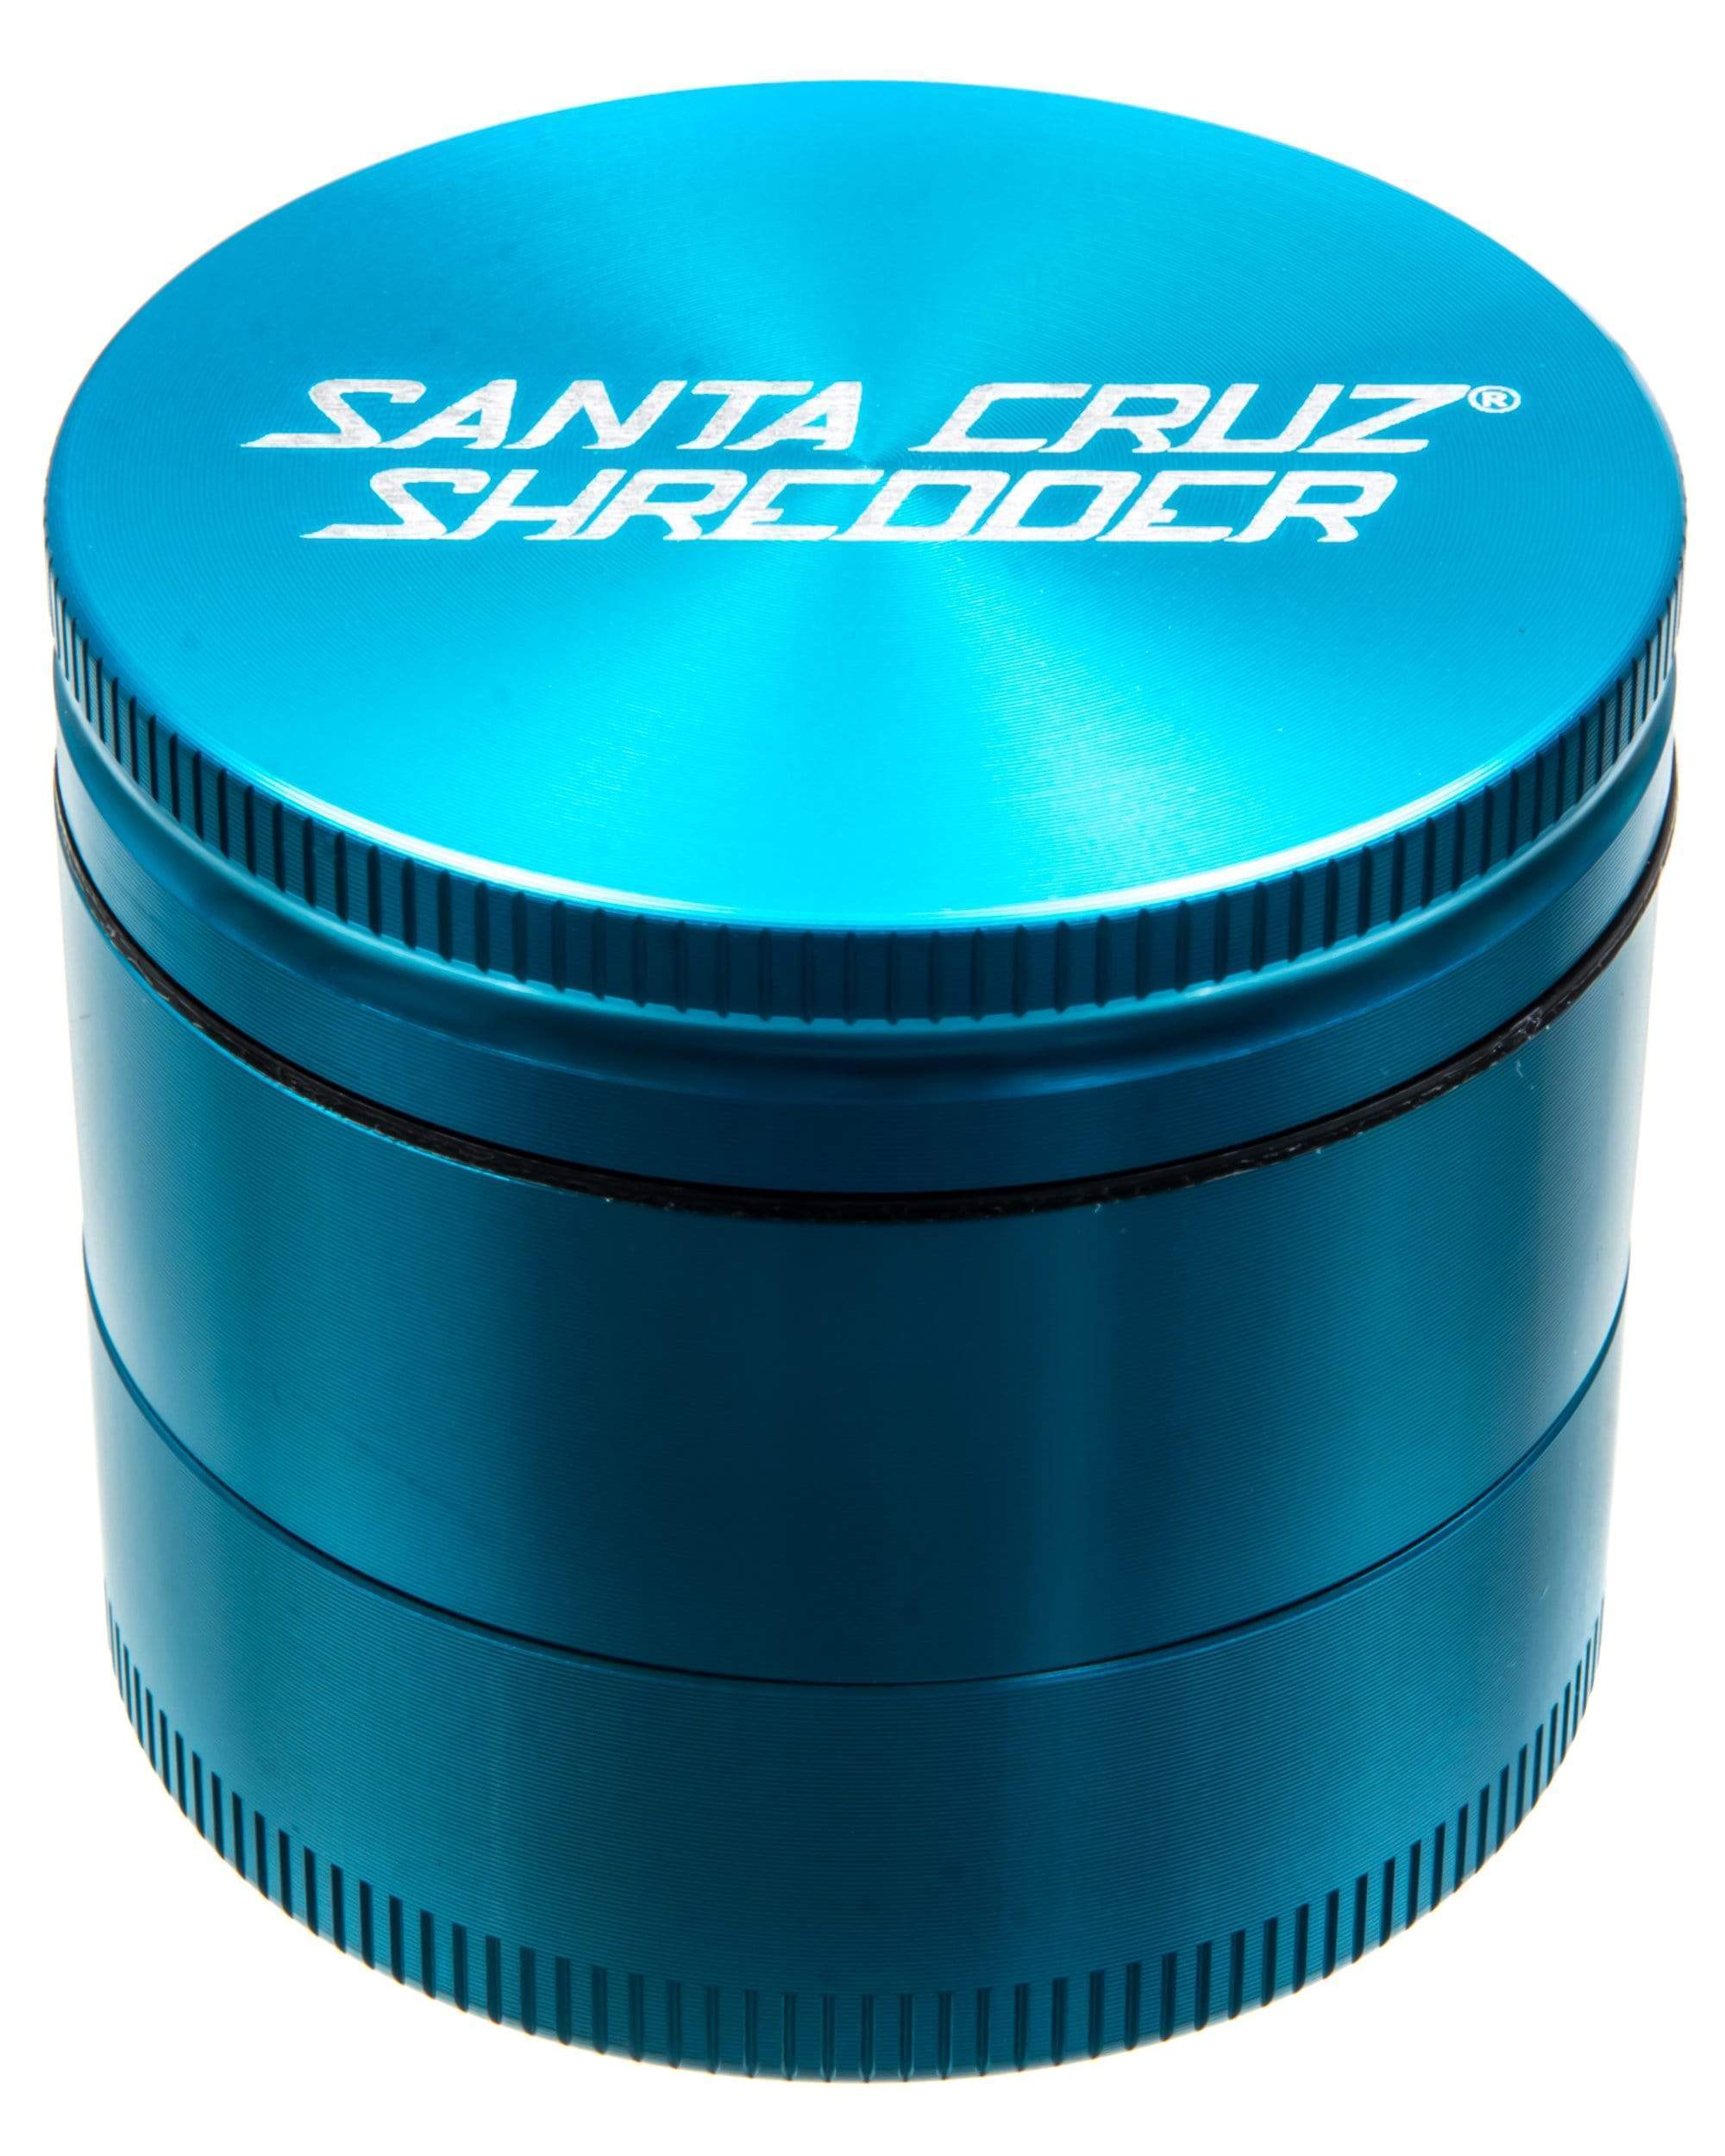 Santa Cruz Shredder Medium 3 Piece Herb Grinder